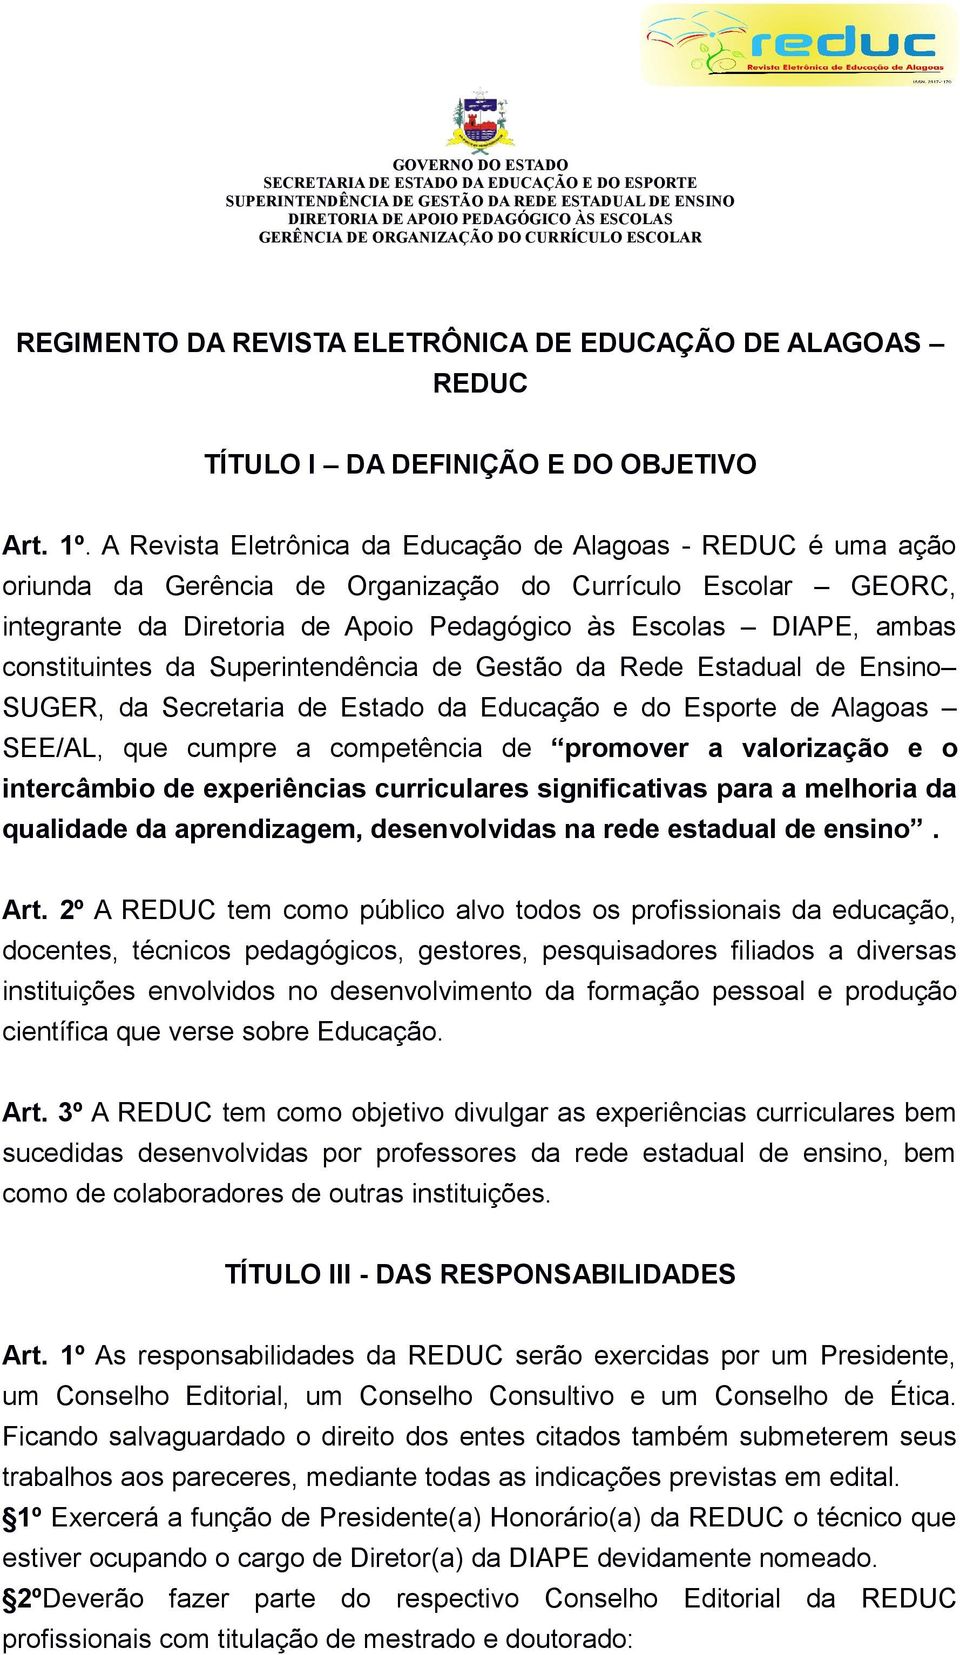 A Revista Eletrônica da Educação de Alagoas - REDUC é uma ação oriunda da Gerência de Organização do Currículo Escolar GEORC, integrante da Diretoria de Apoio Pedagógico às Escolas DIAPE, ambas